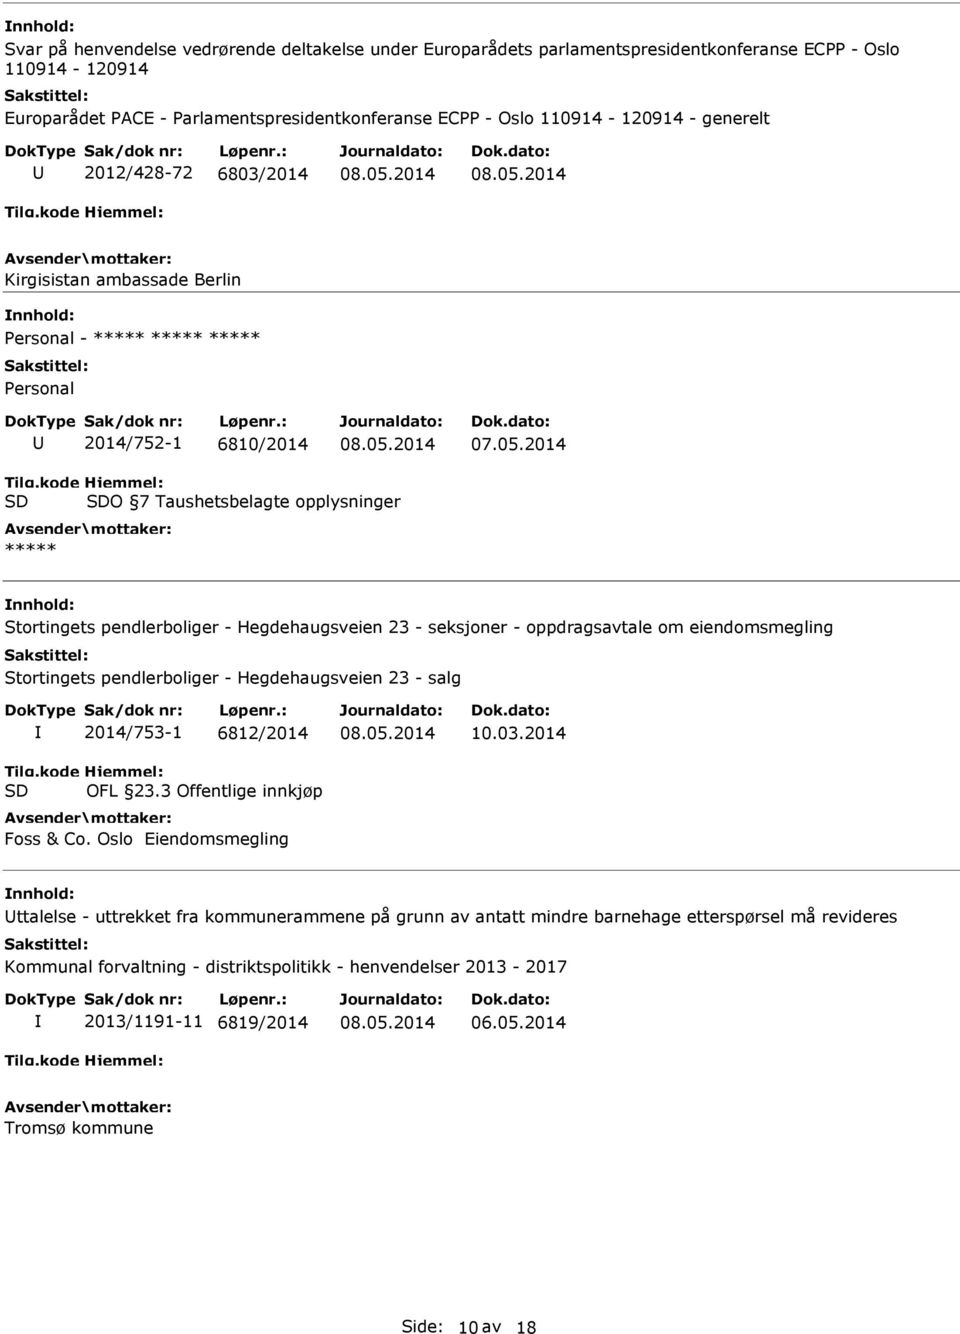 oppdragsavtale om eiendomsmegling Stortingets pendlerboliger - Hegdehaugsveien 23 - salg 2014/753-1 6812/2014 OFL 23.3 Offentlige innkjøp Foss & Co. Oslo Eiendomsmegling 10.03.